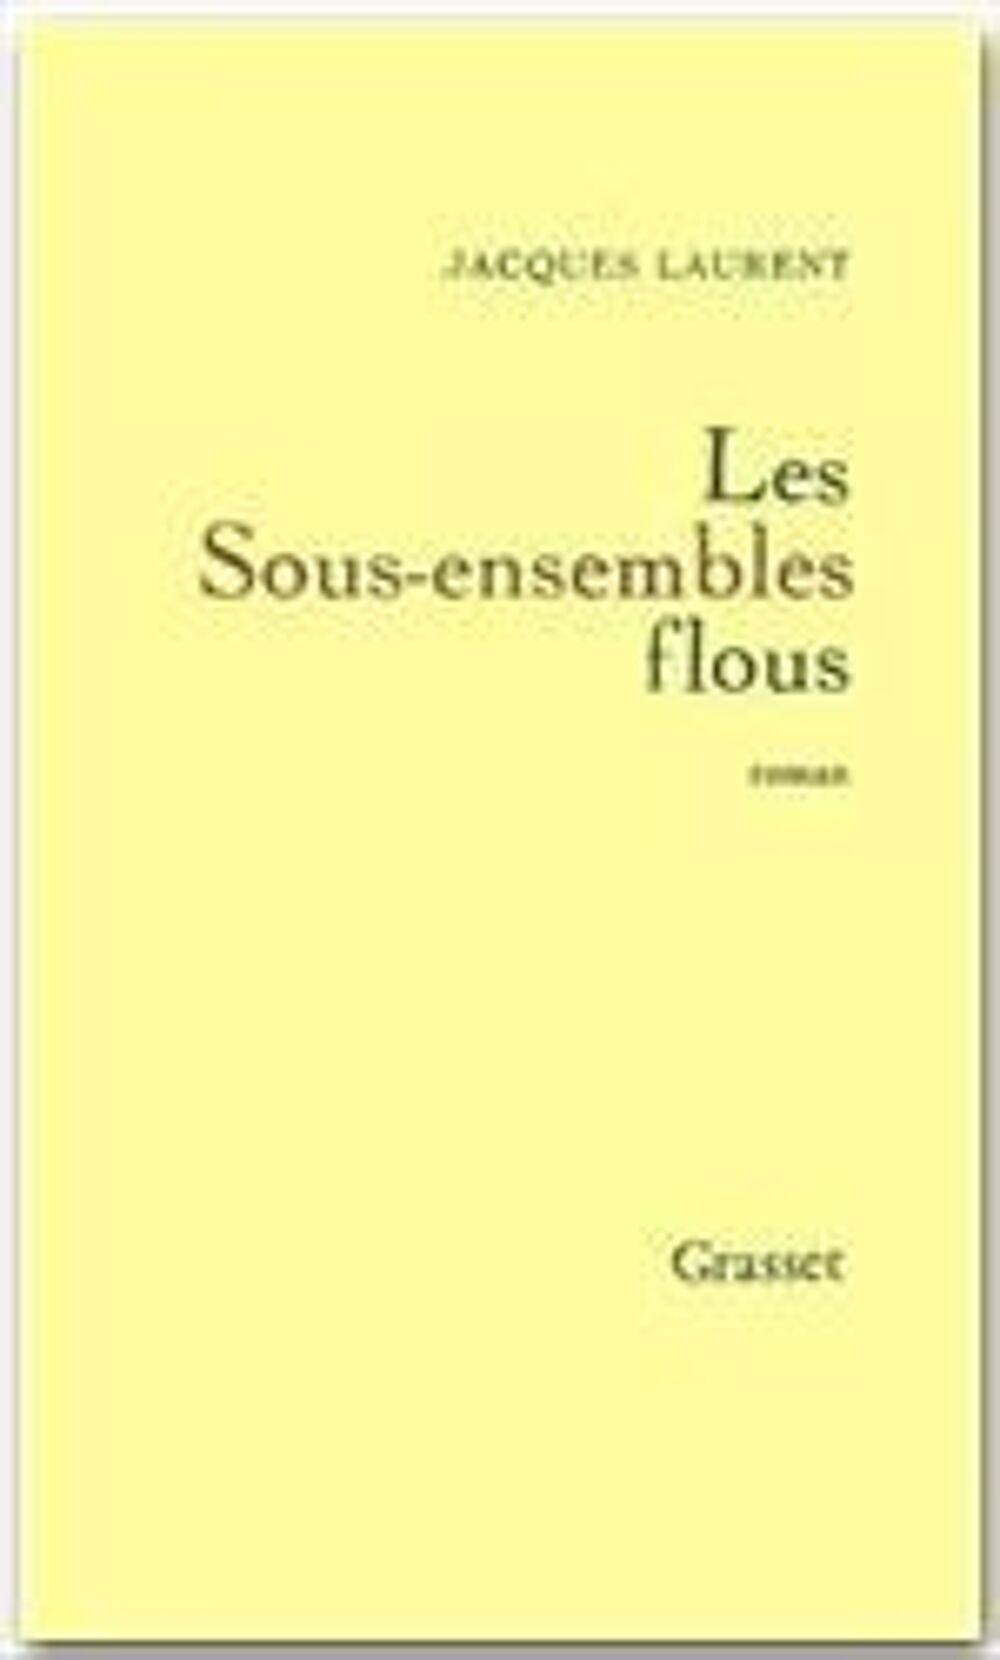 Les sous-ensembles flous - Jacques Laurent, Livres et BD